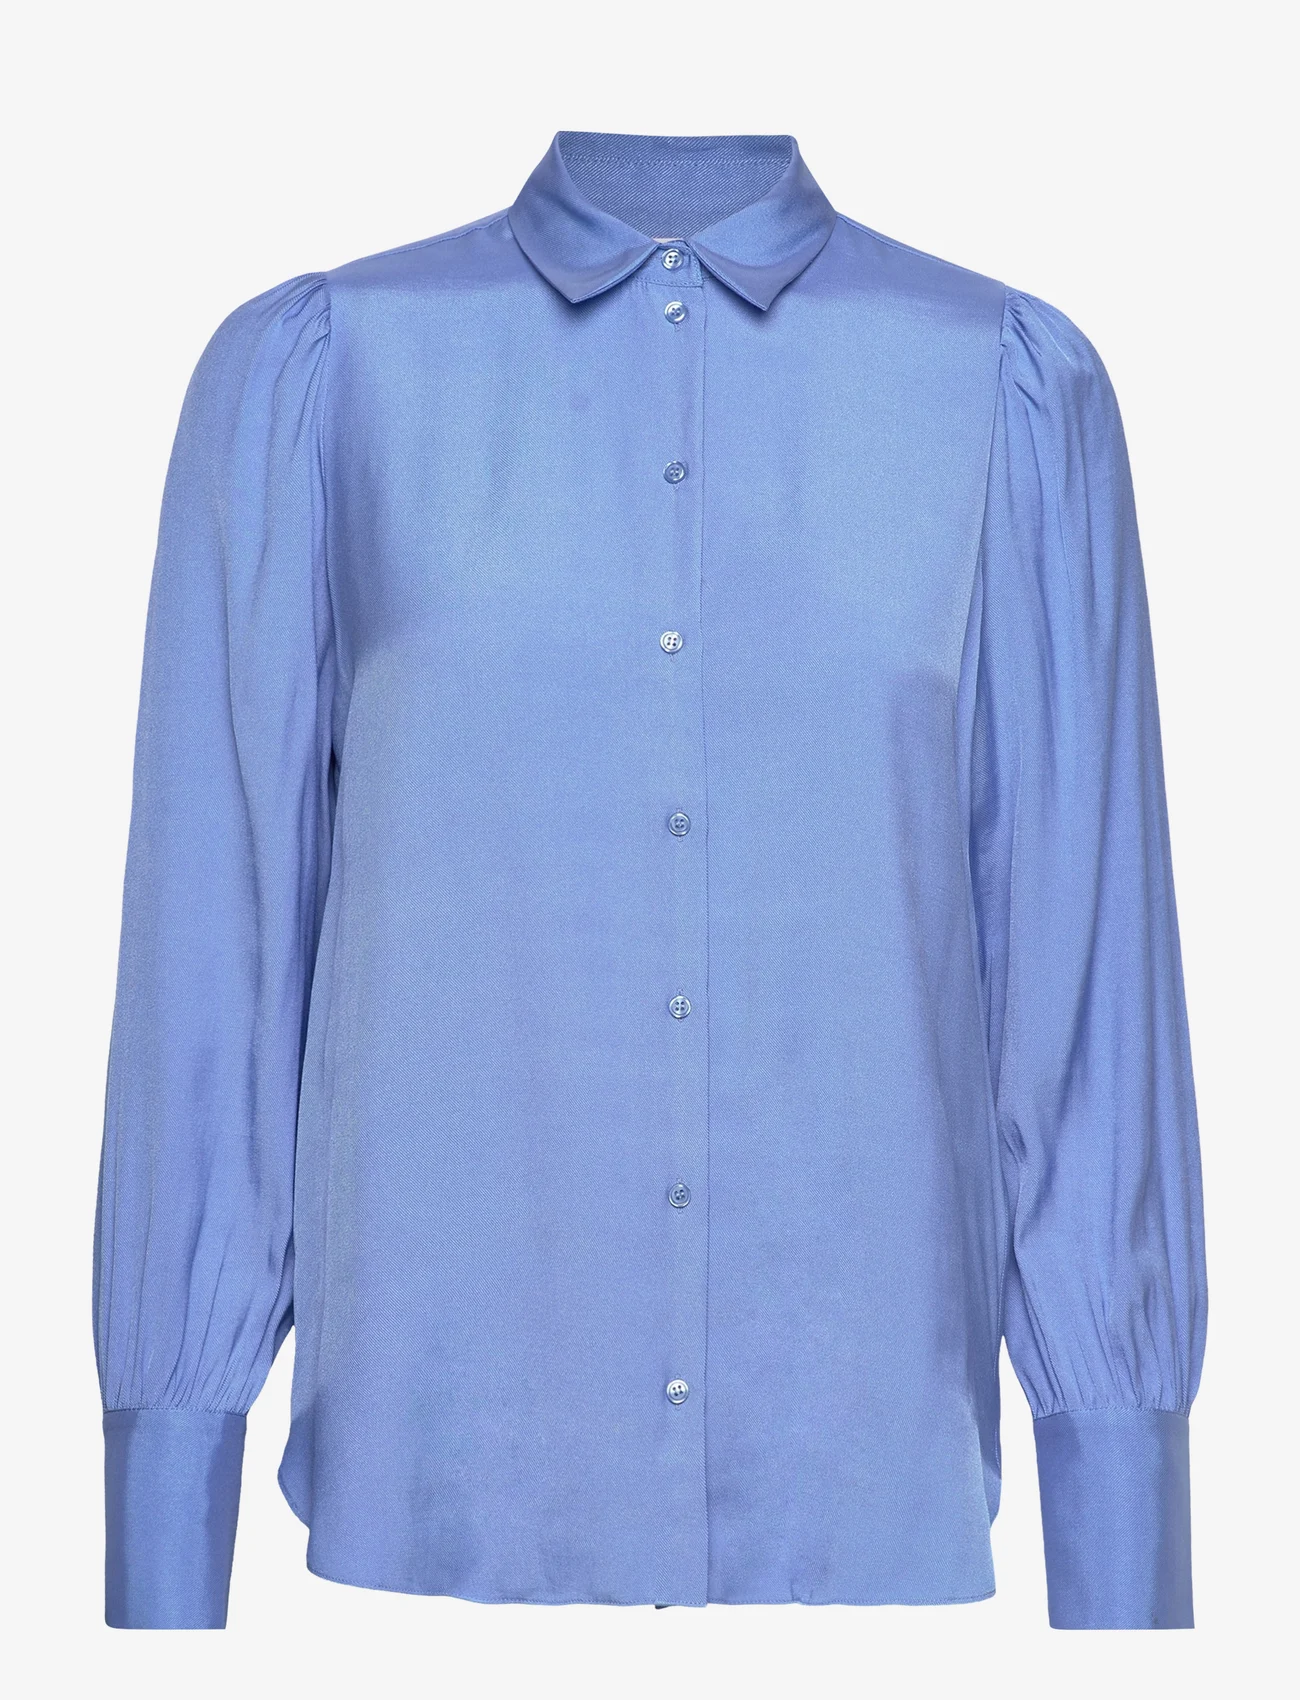 Selected Femme - SLFALFA LS  SHIRT B - langærmede skjorter - ultramarine - 0